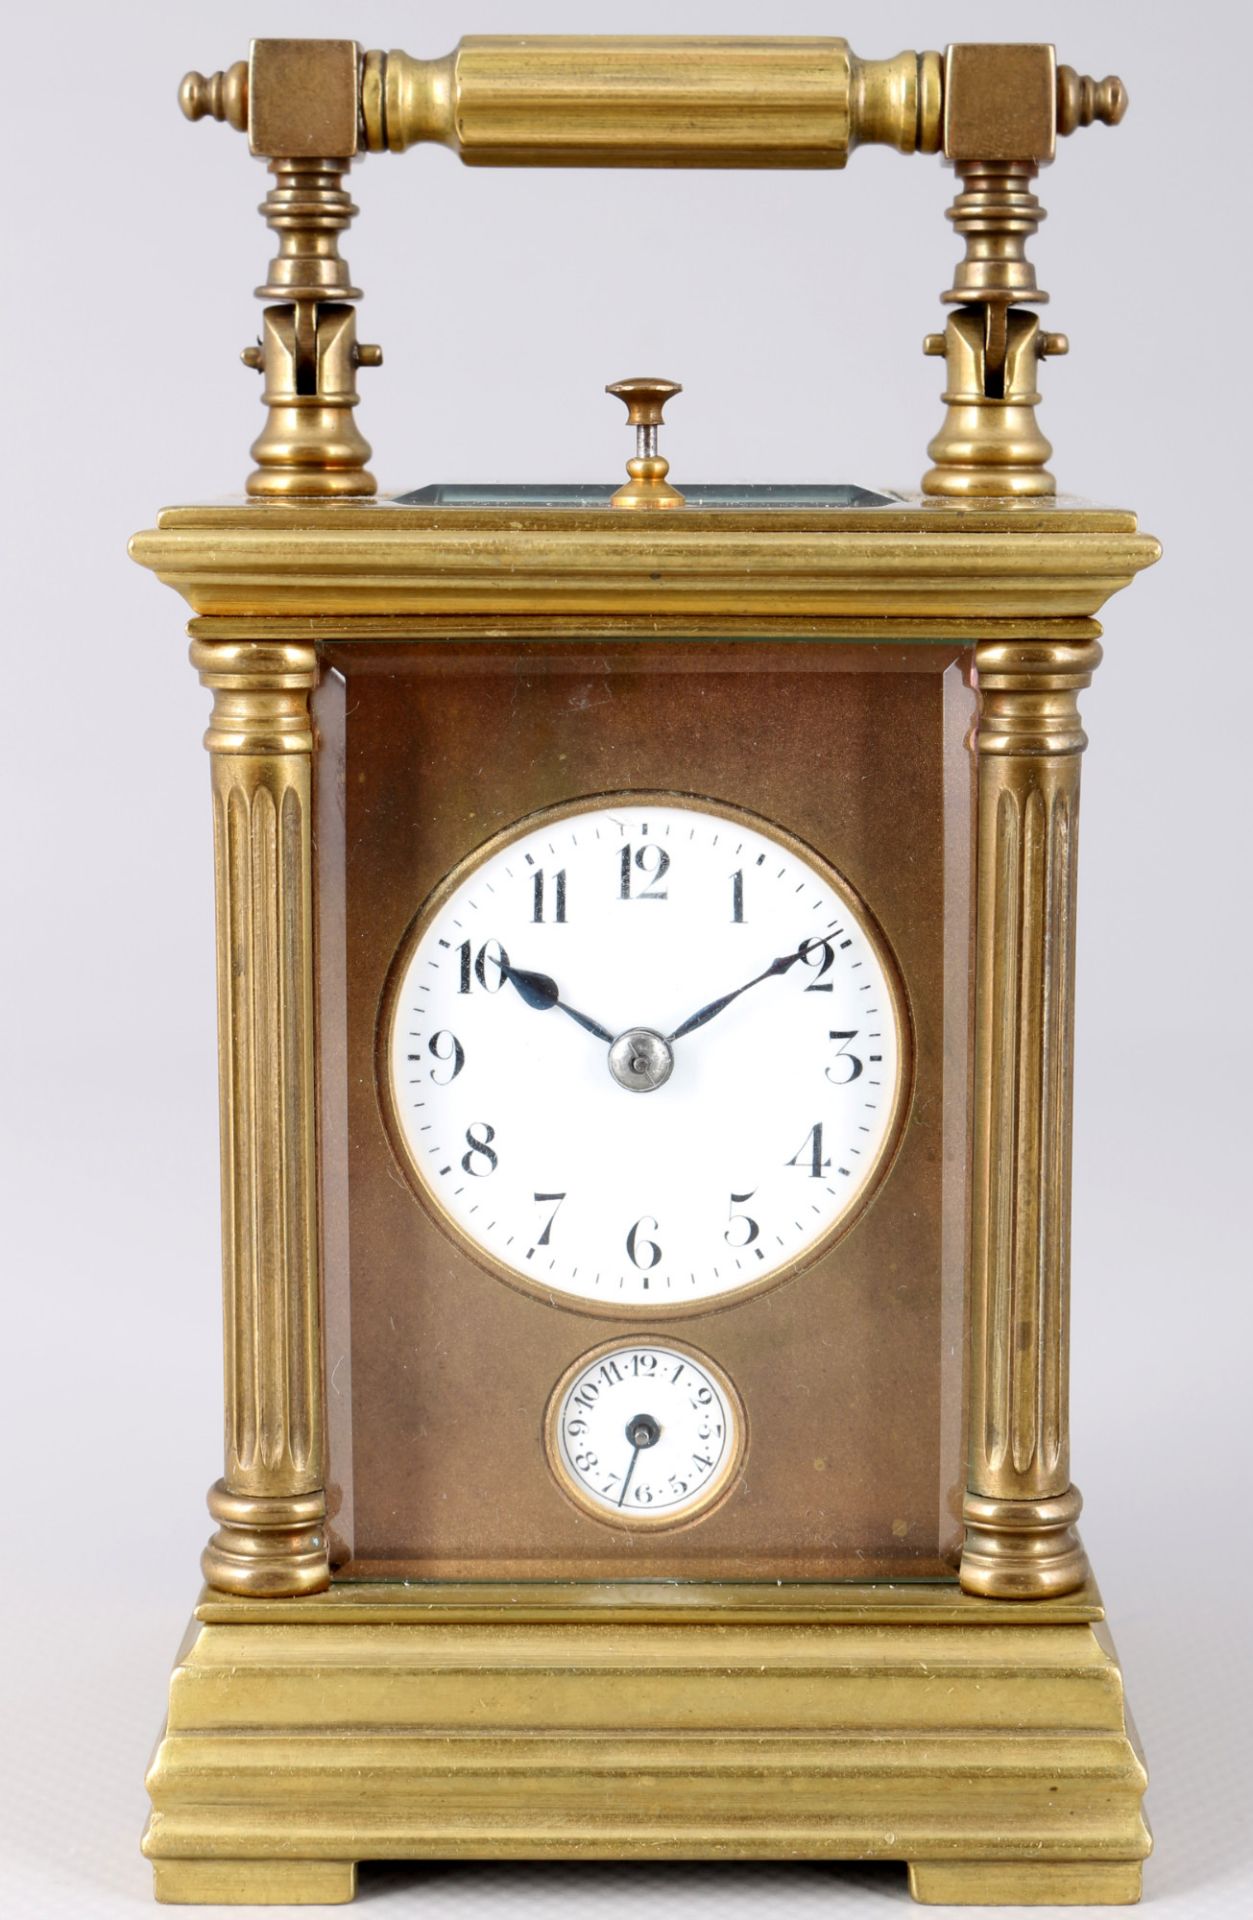 Fench carriage clock around 1900, Petit Sonnerie Reiseuhrmit Wecker,